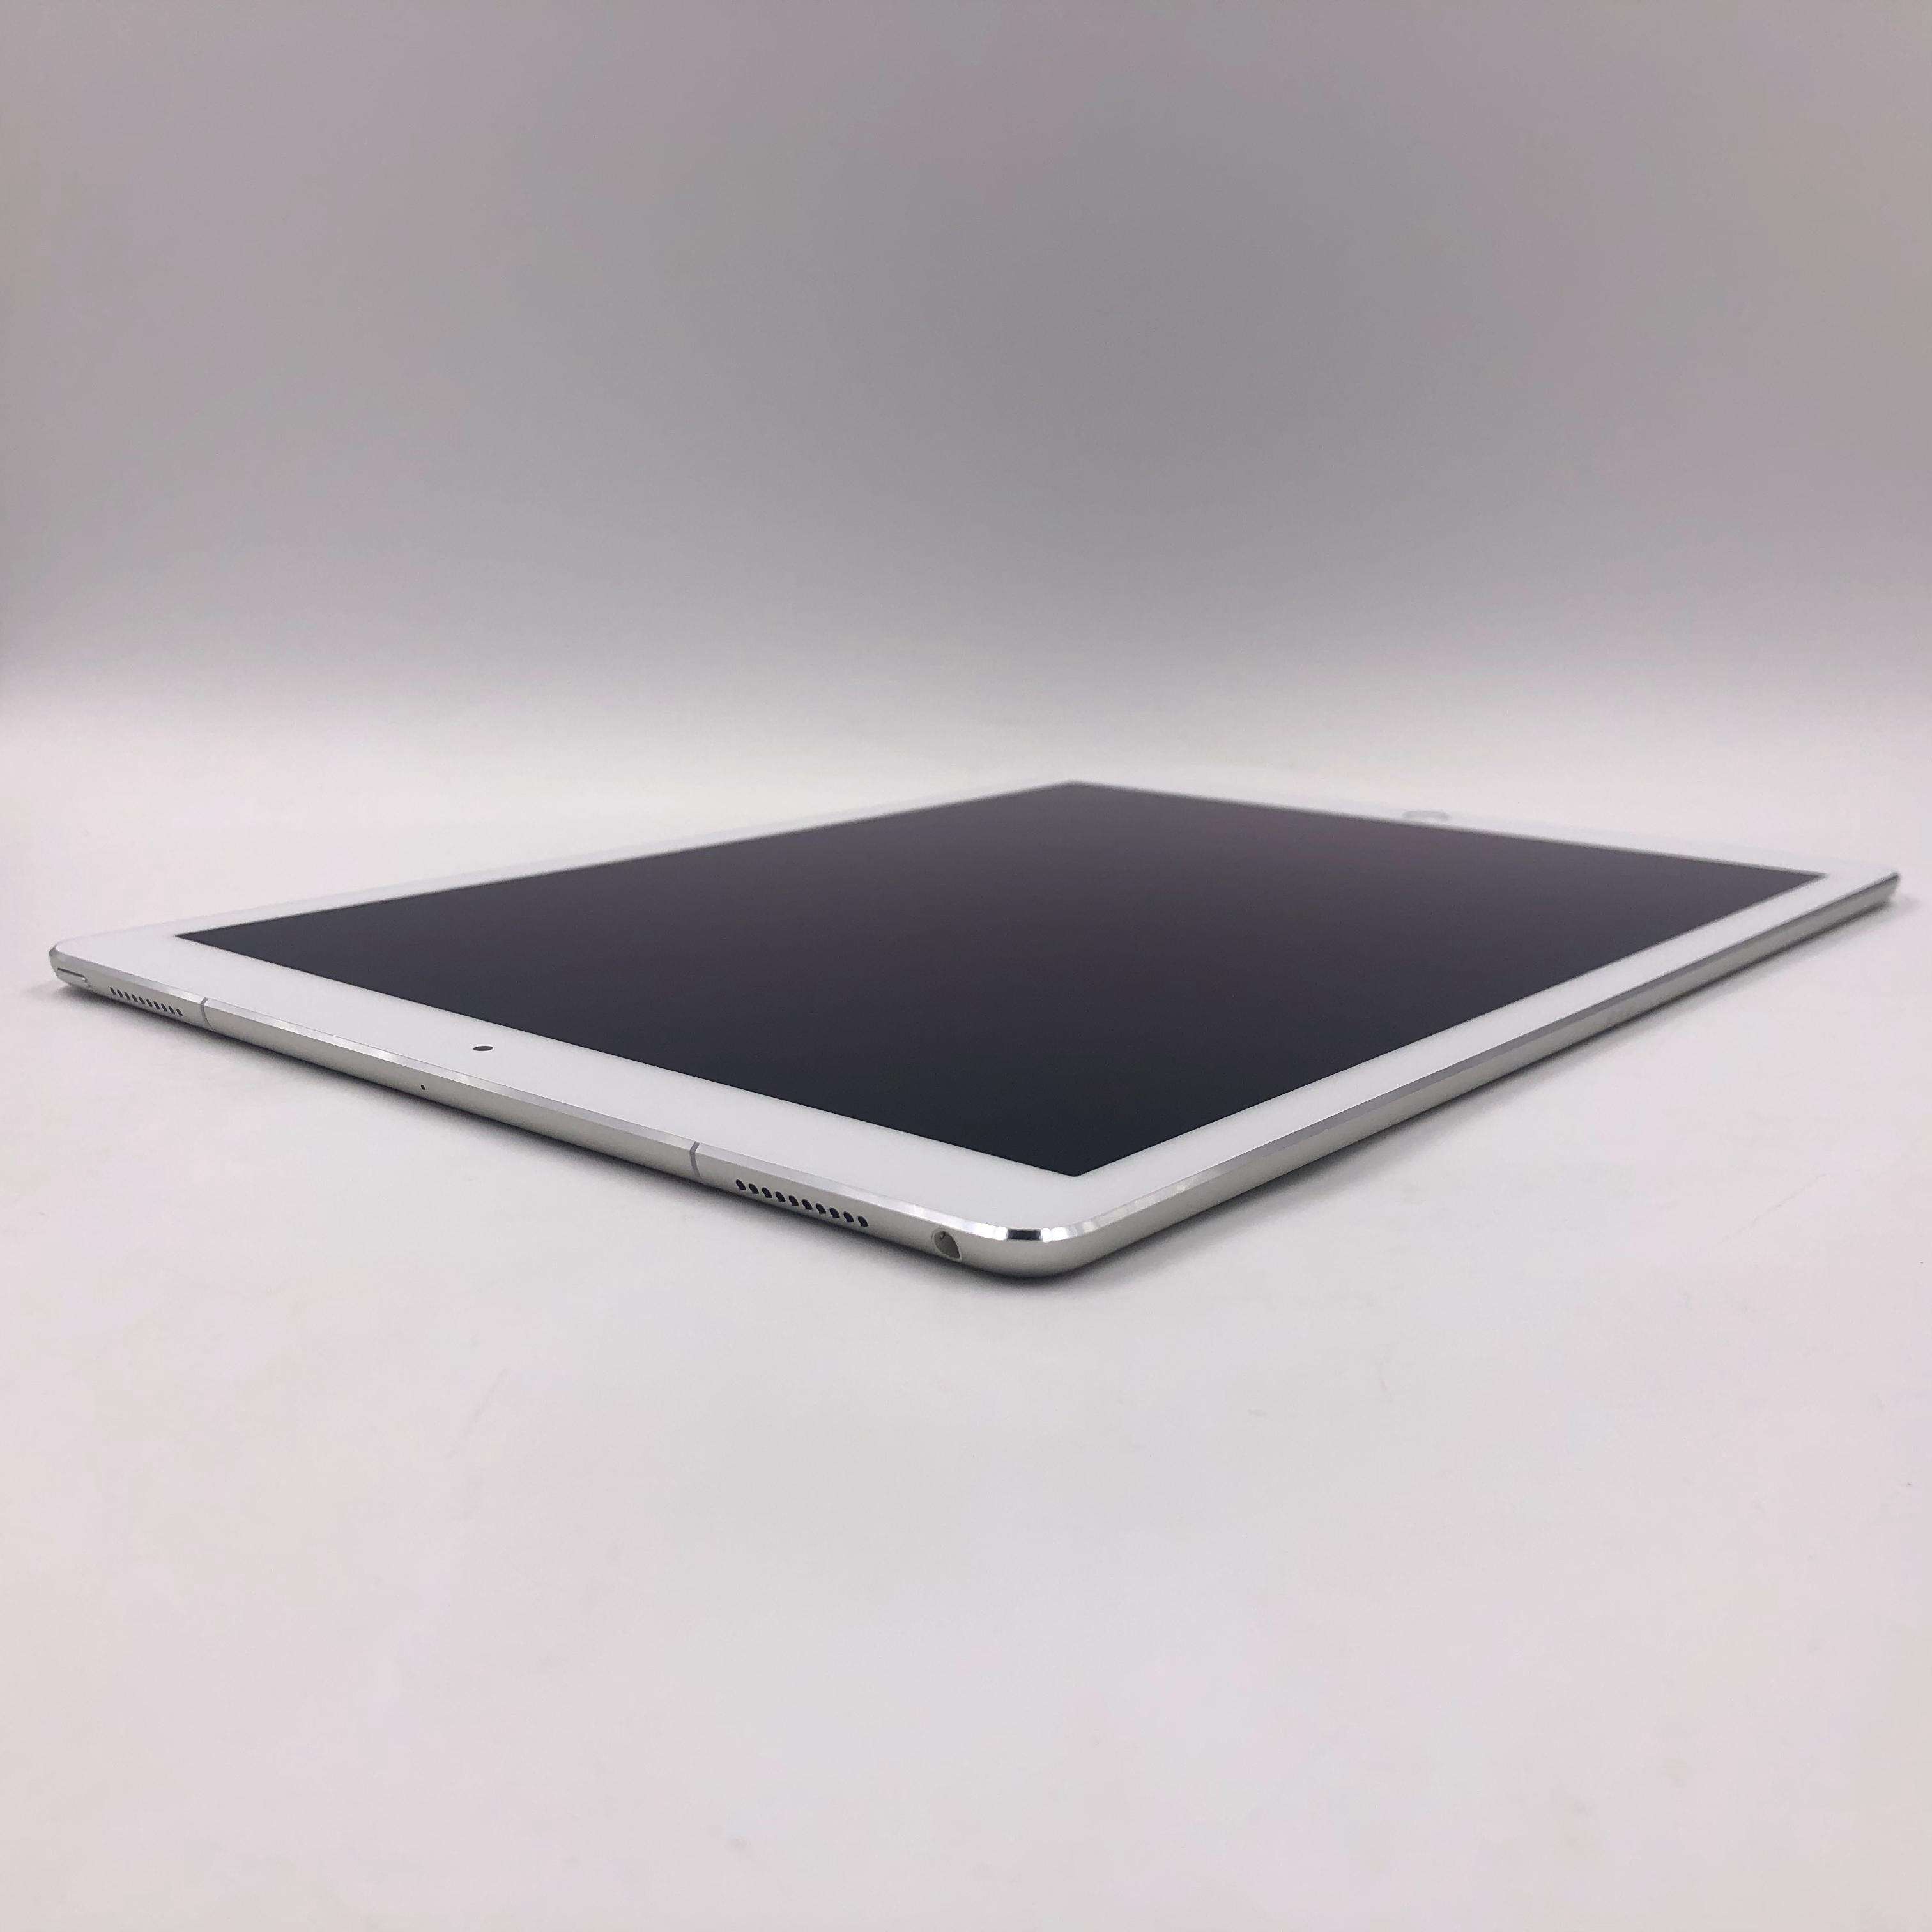 iPad Pro 12.9英寸(2017) 512G Cellular版